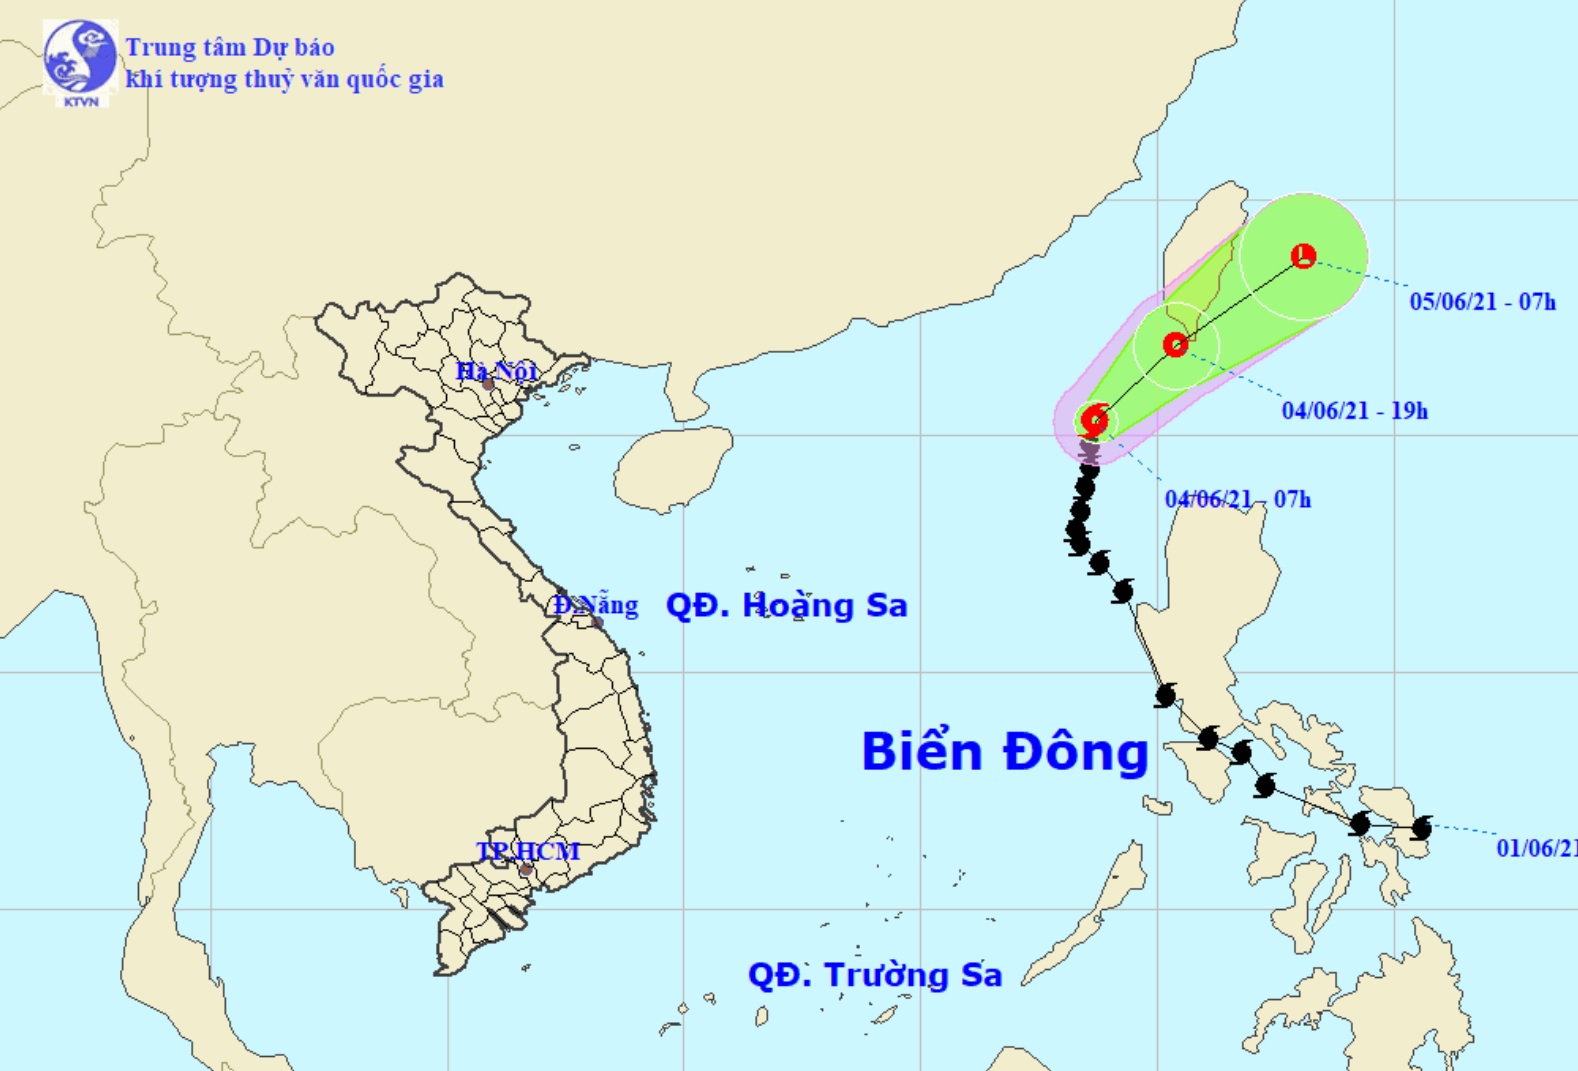 Vị trí và hướng di chuyển tiếp theo của bão số 1 Choi-wan. Ảnh Trung tâm Dự báo KTTVQG